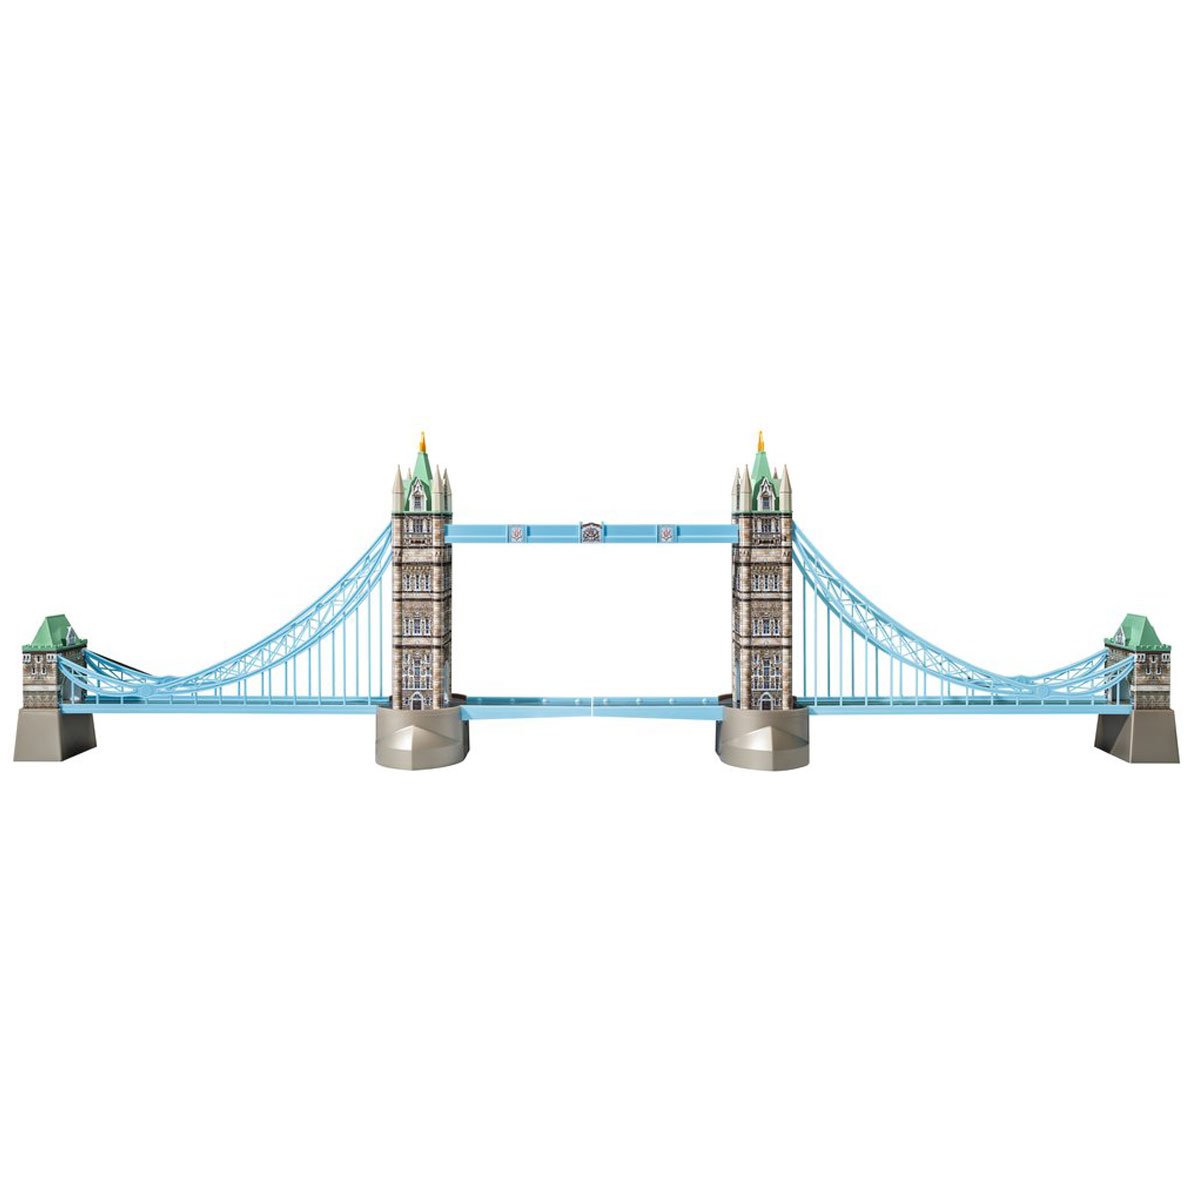 Tower Bridge 3D Jigsaw Puzzle - 216 Piece - 2